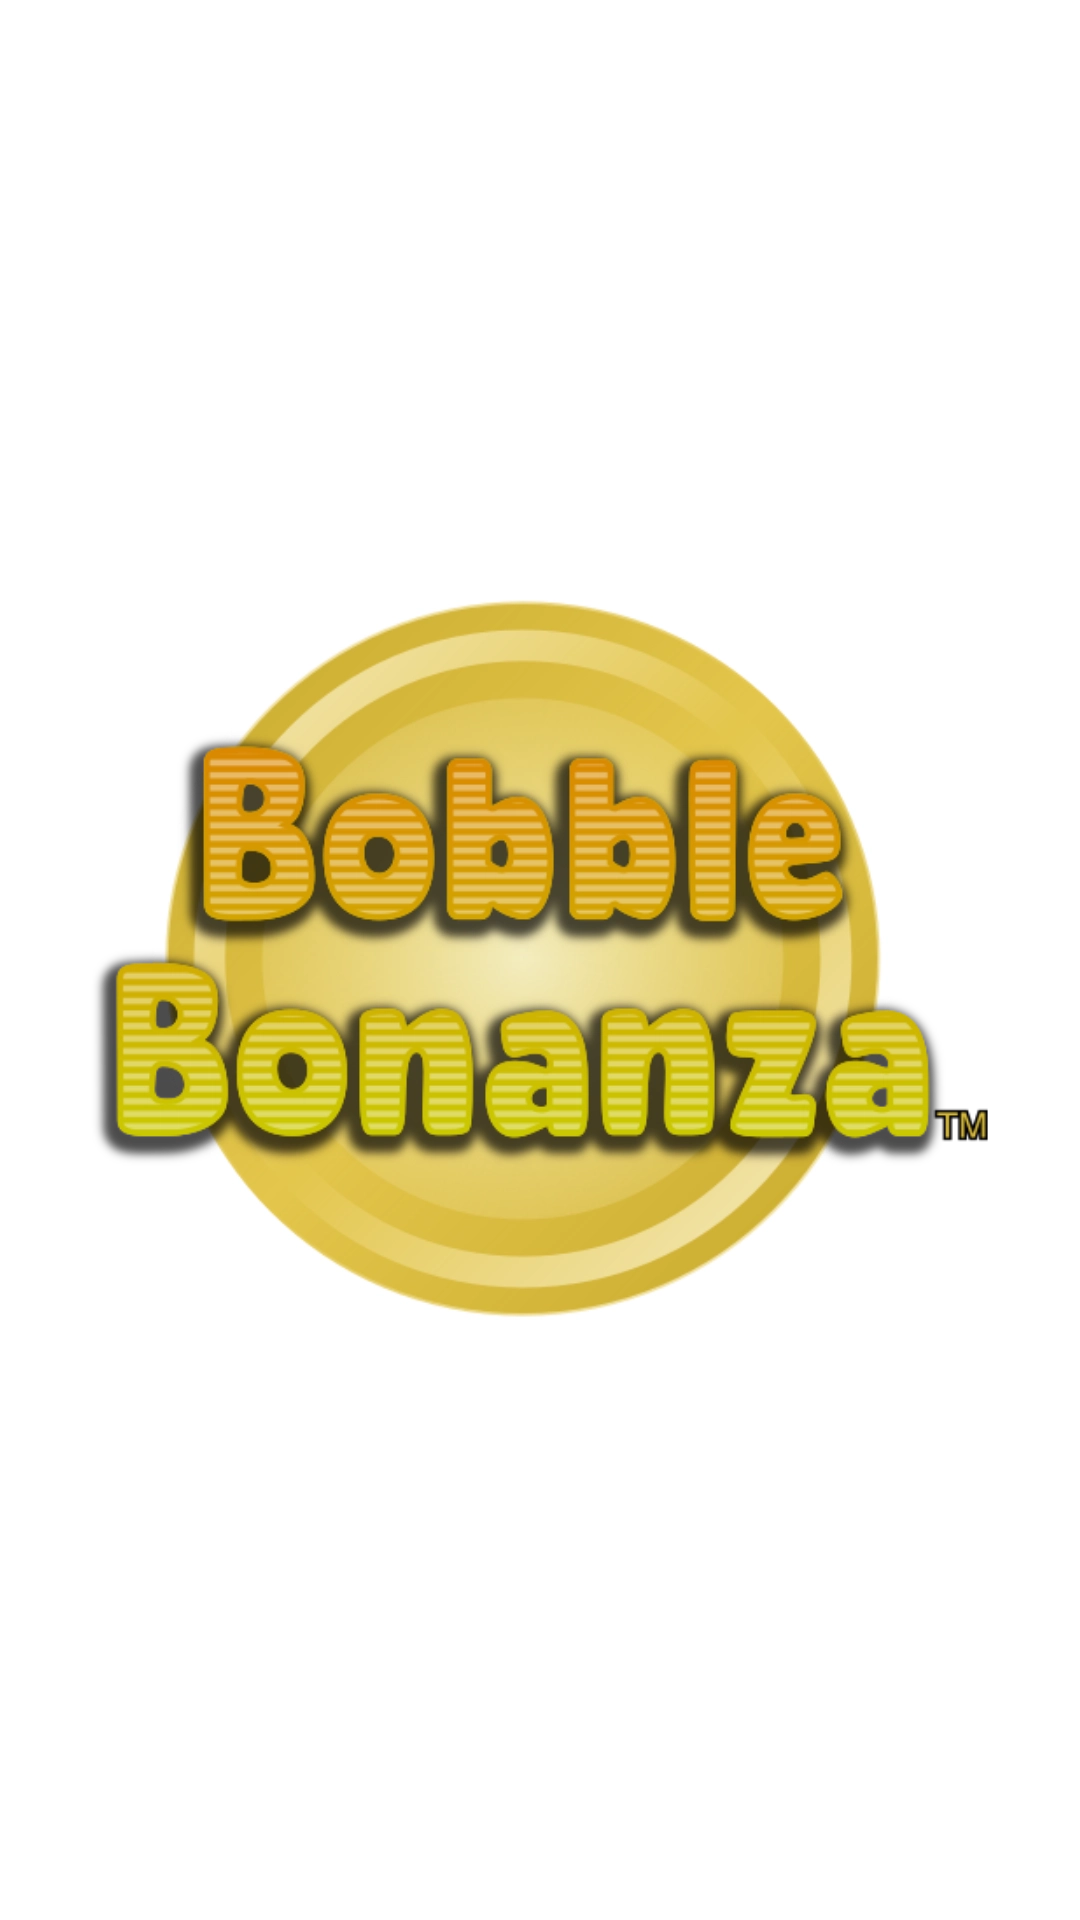 Bobble Bonanza